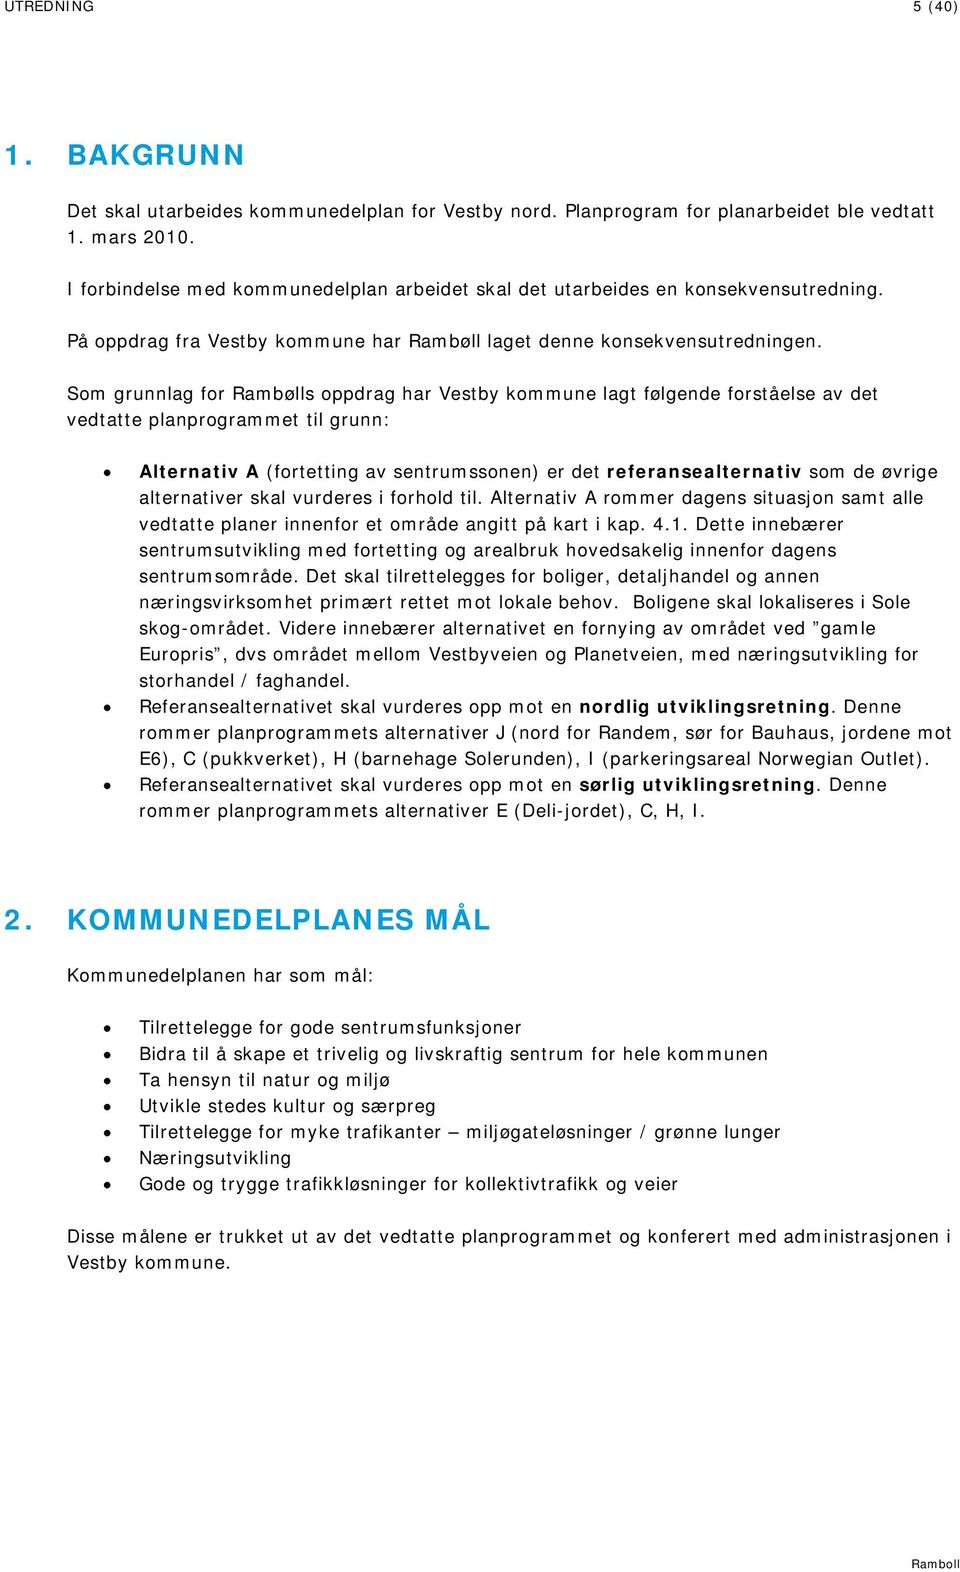 Som grunnlag for Rambølls oppdrag har Vestby kommune lagt følgende forståelse av det vedtatte planprogrammet til grunn: Alternativ A (fortetting av sentrumssonen) er det referansealternativ som de